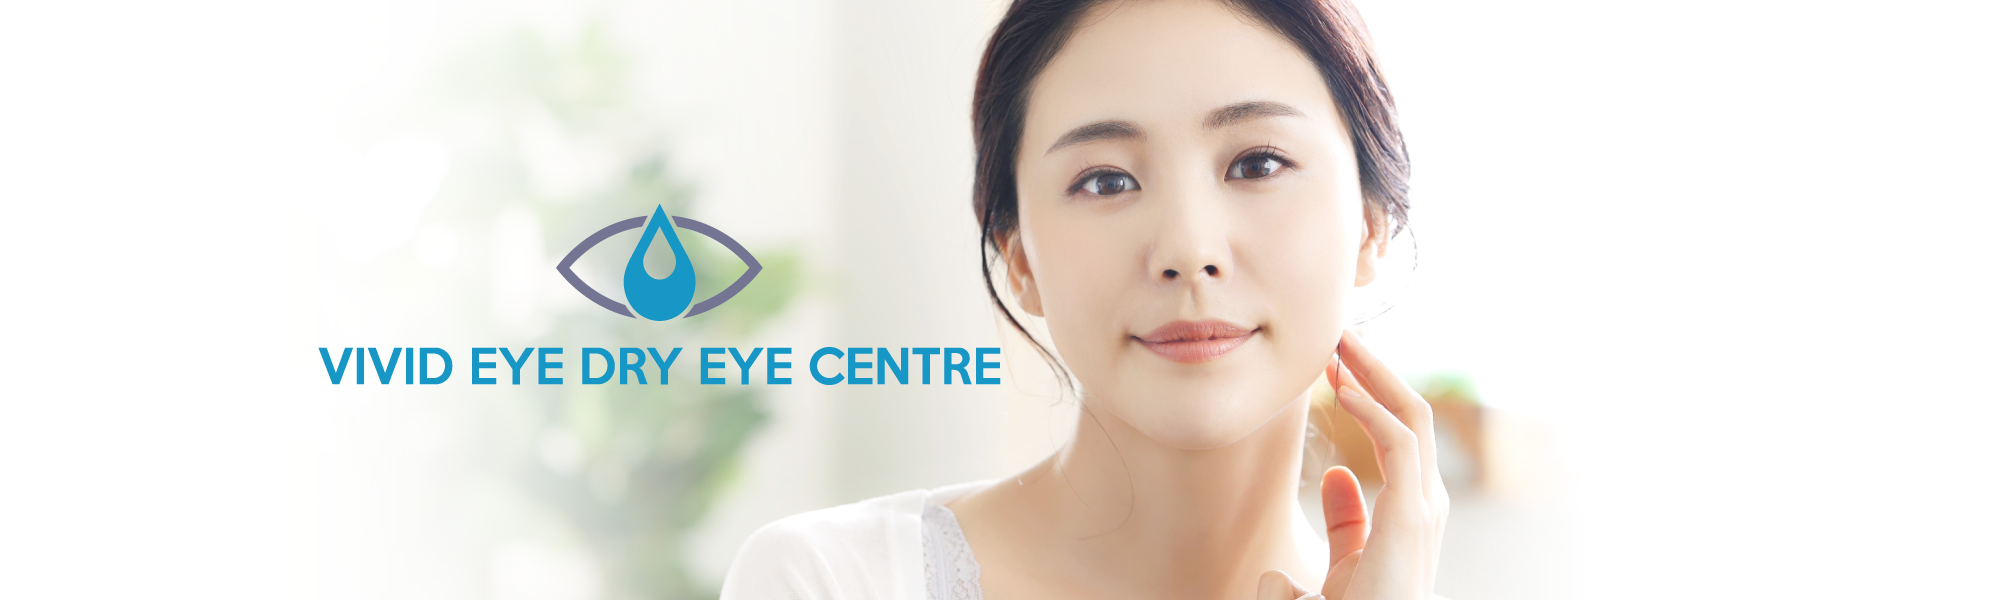 Vivid Eye Dry Eye Centre